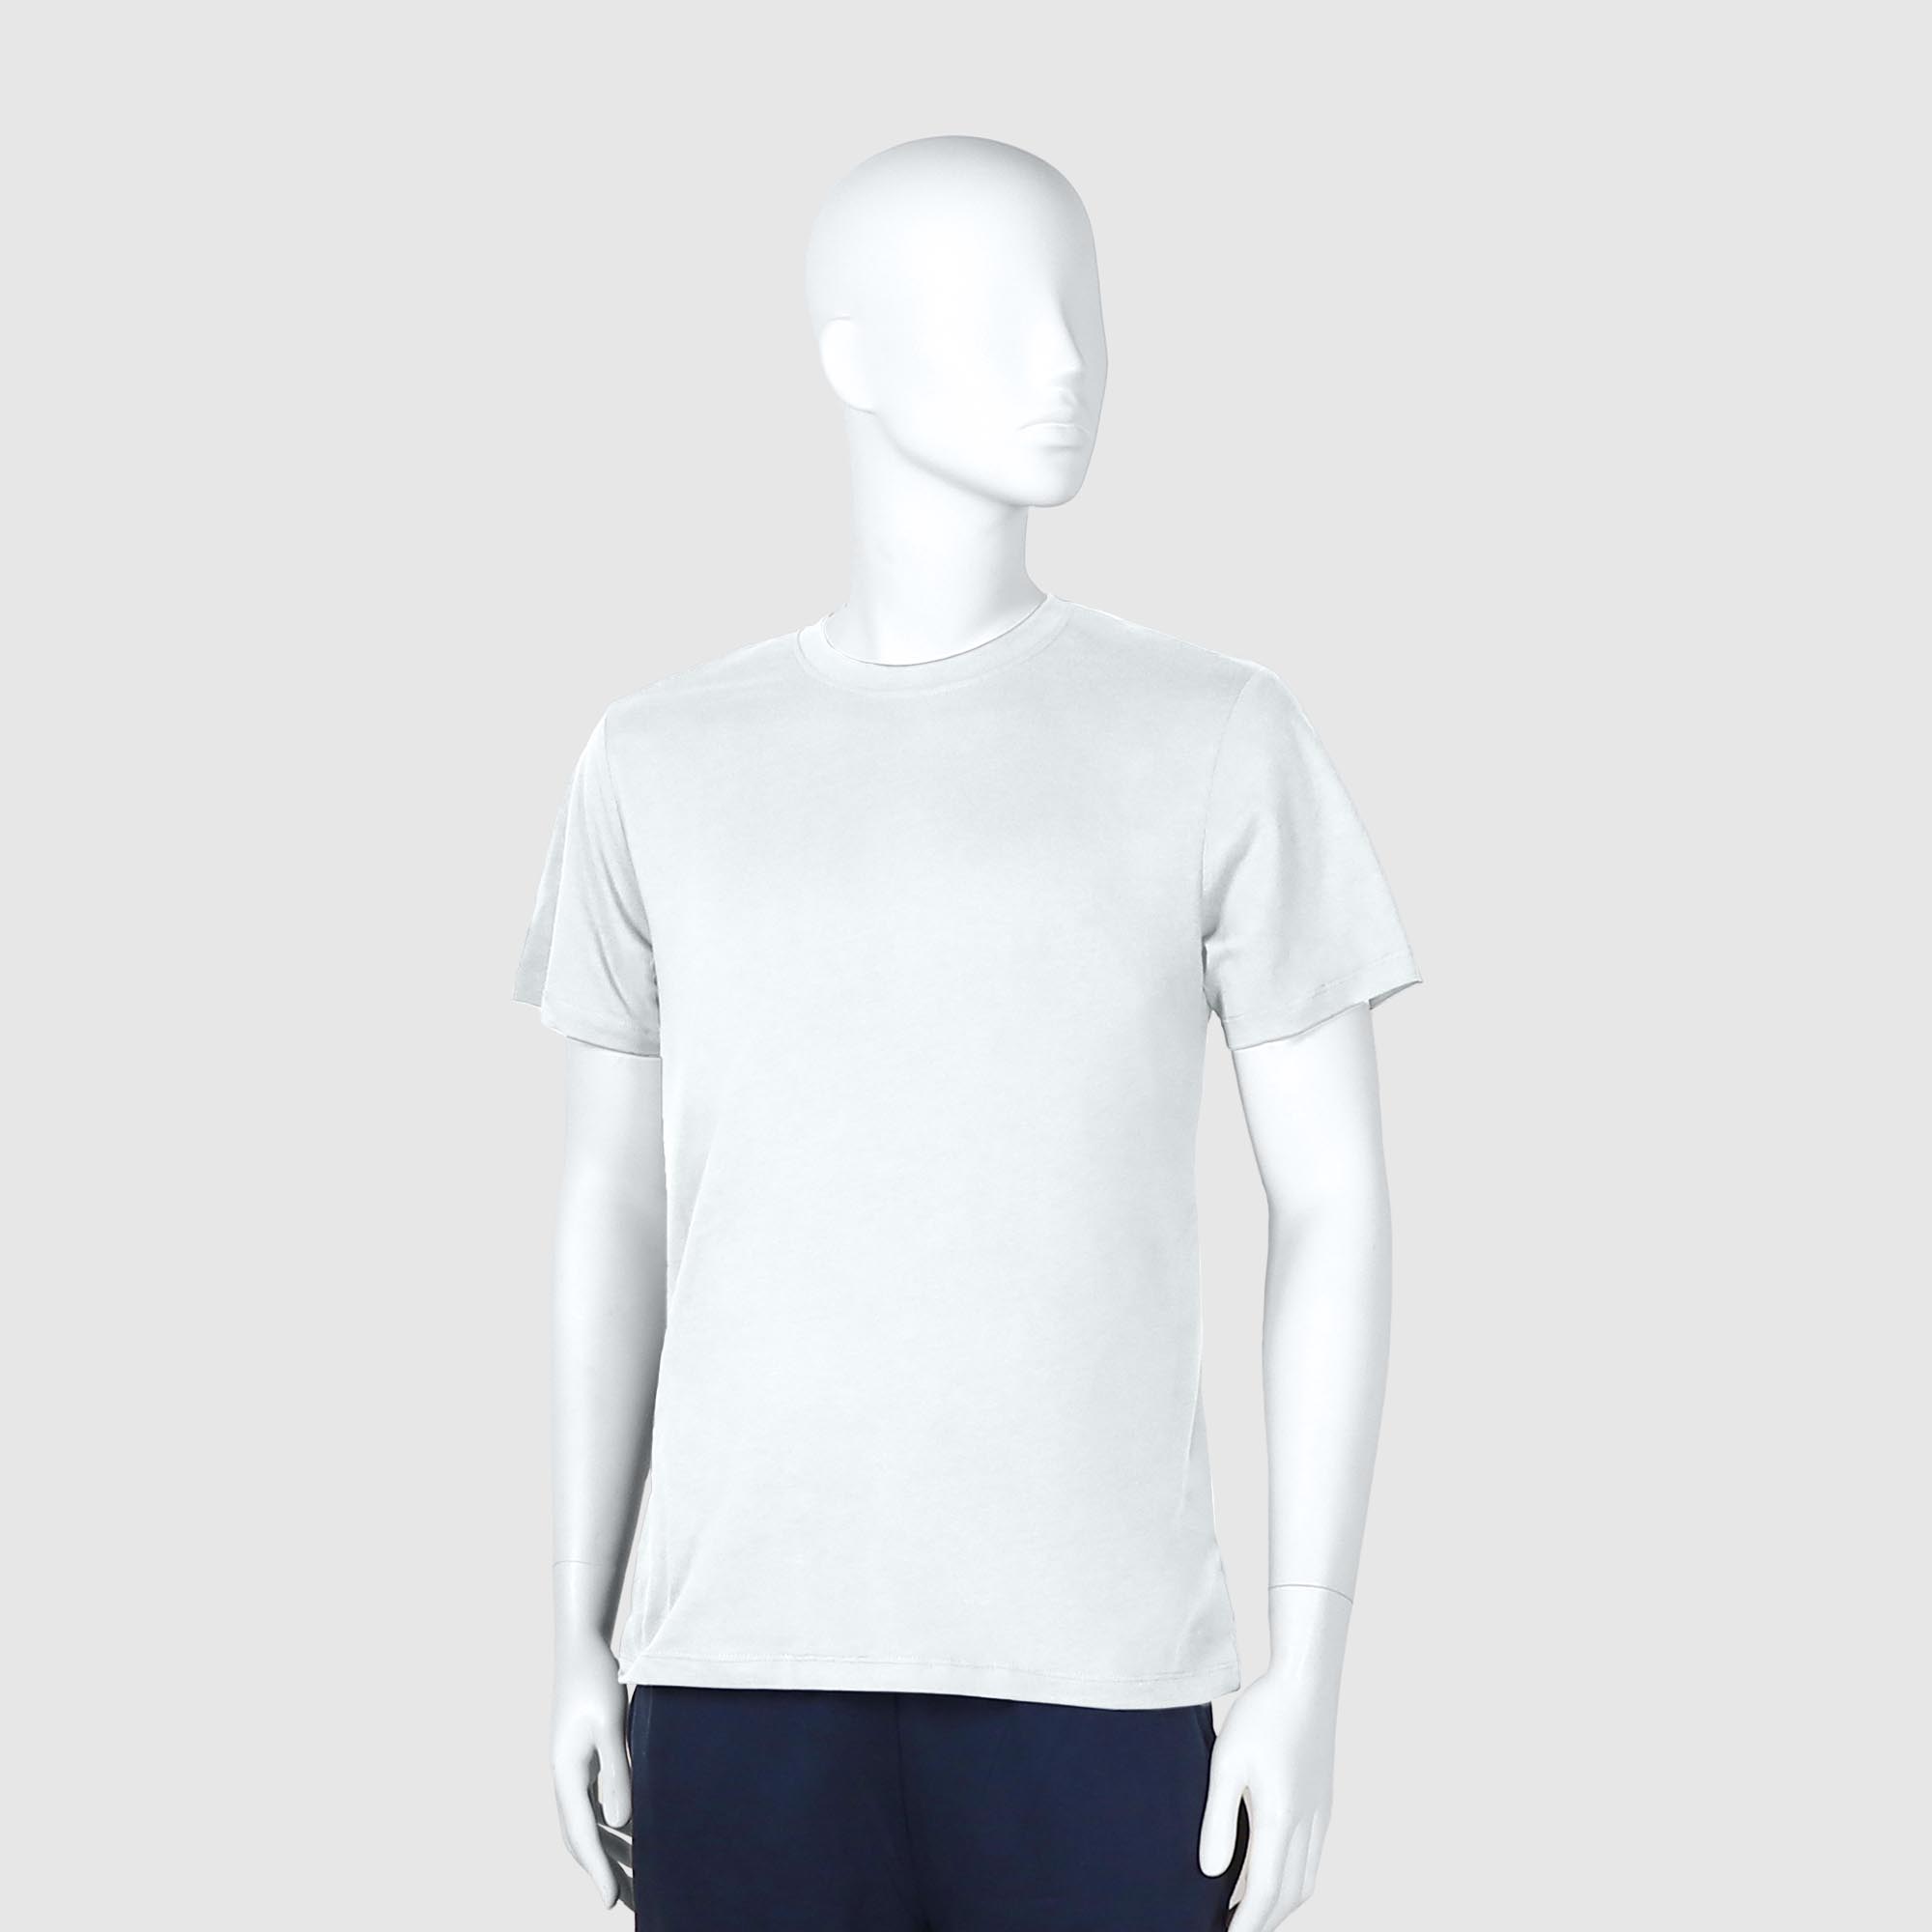 Мужская футболка Diva Teks белая (DTD-02), цвет белый, размер 46-48